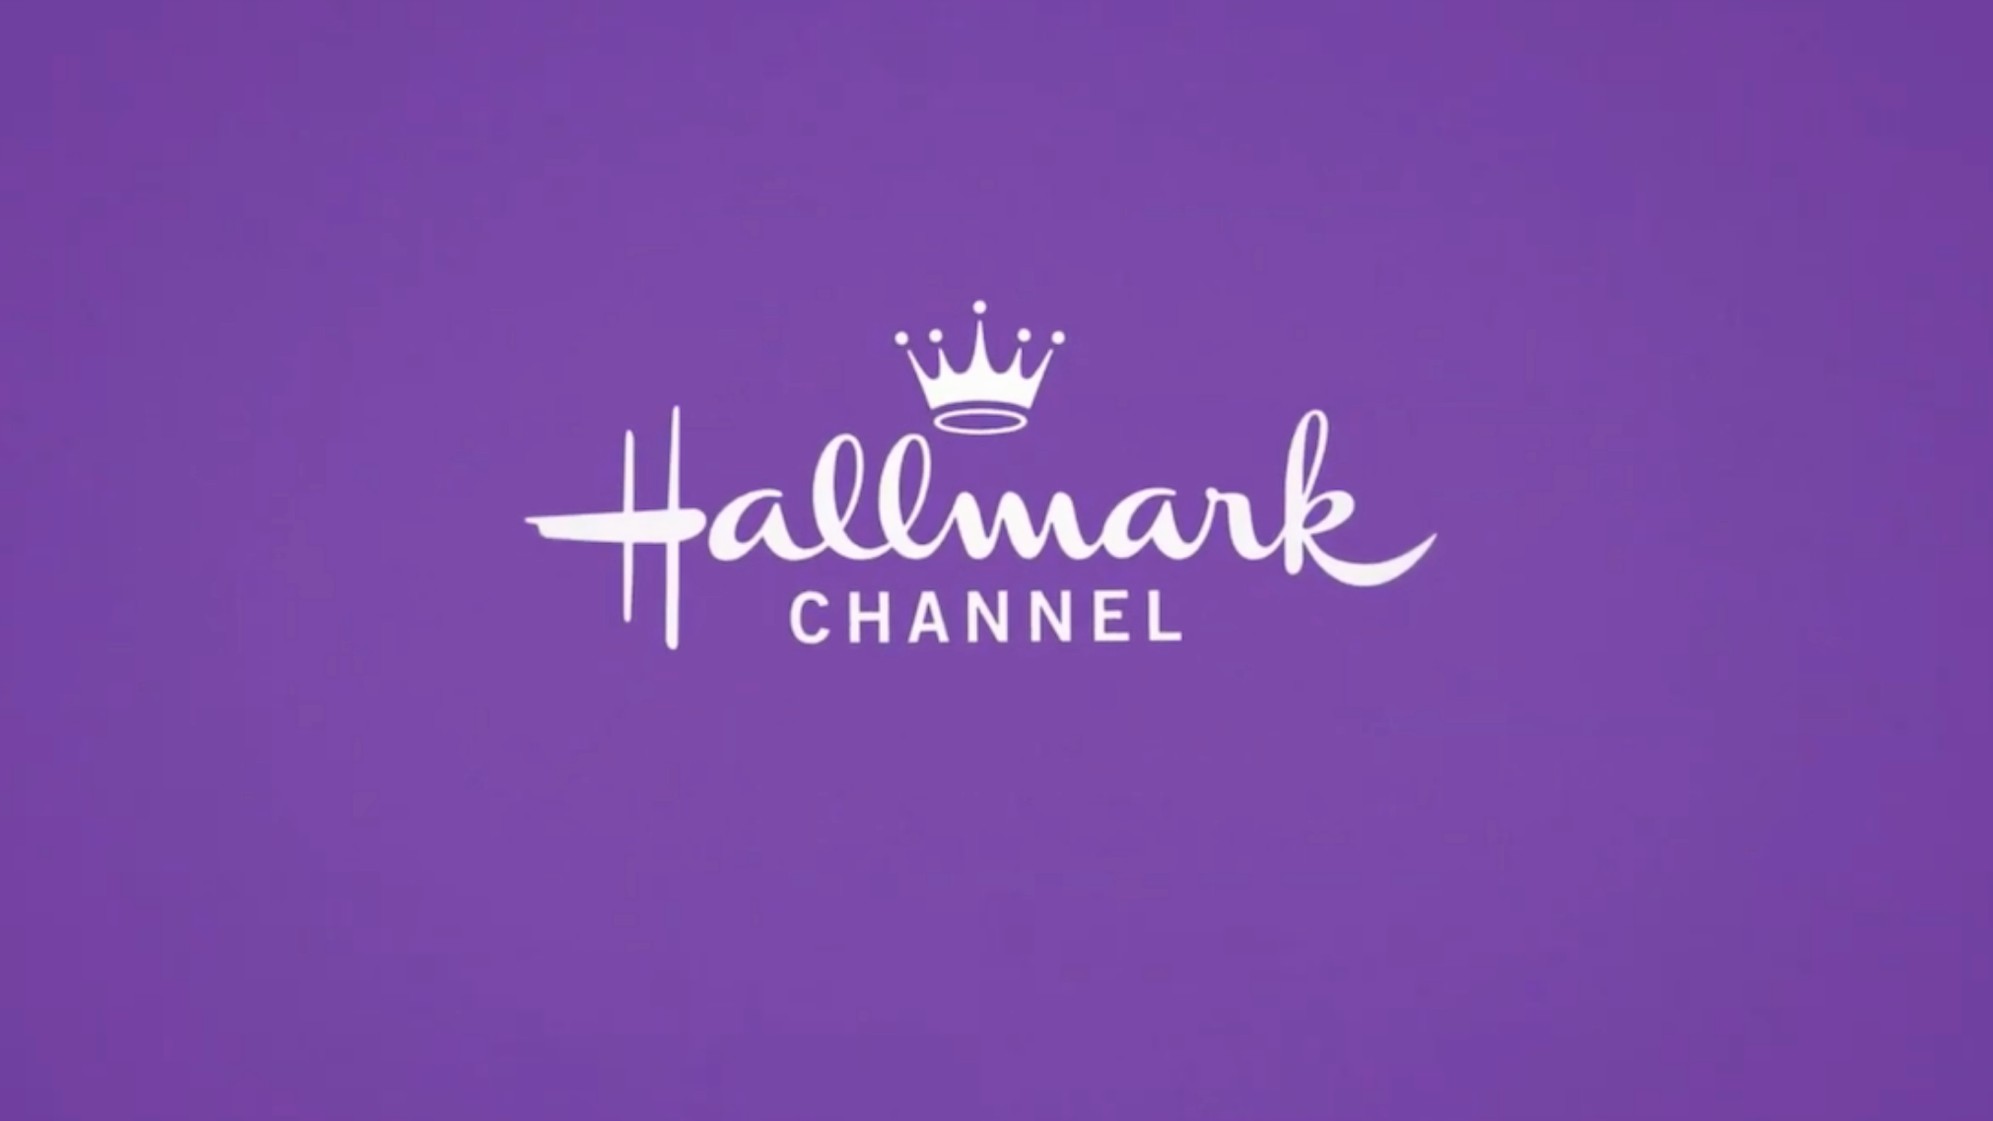 the hallmark channel